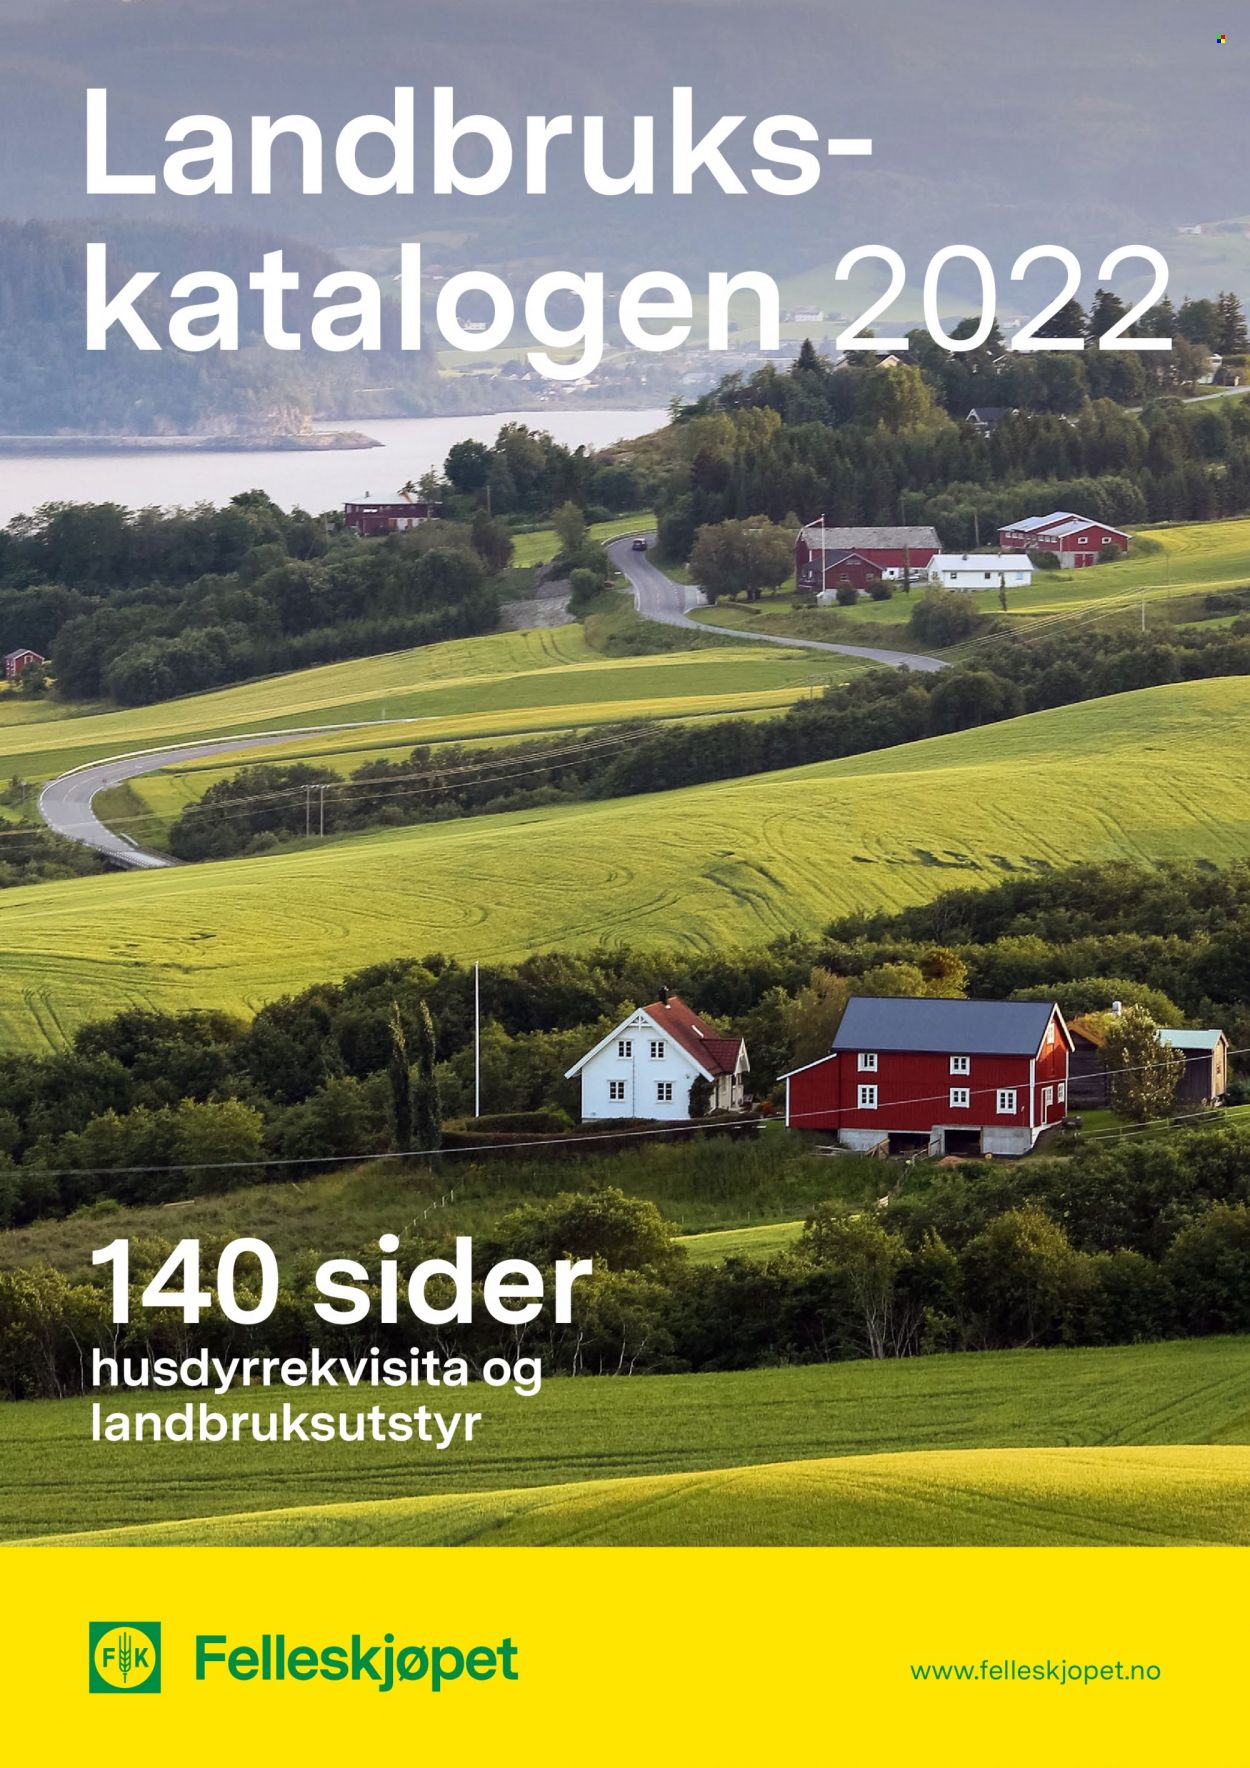 Felleskjøpet -kundeavis  - 28.03.2022 - 31.05.2022. Side 1.